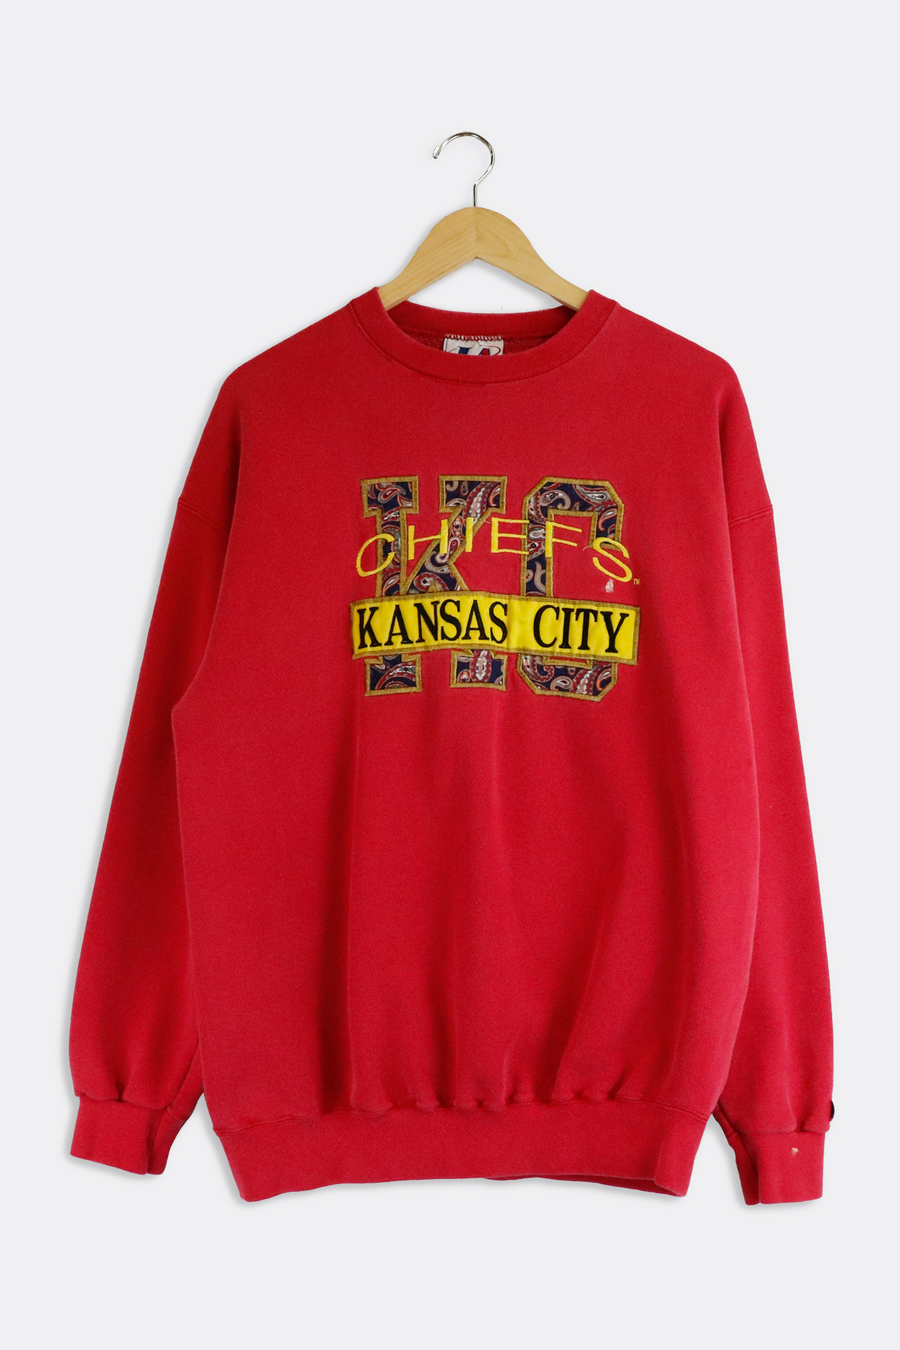 Vintage NFL Kansas City Chiefs Paisley Patches Sweatshirt Sz L